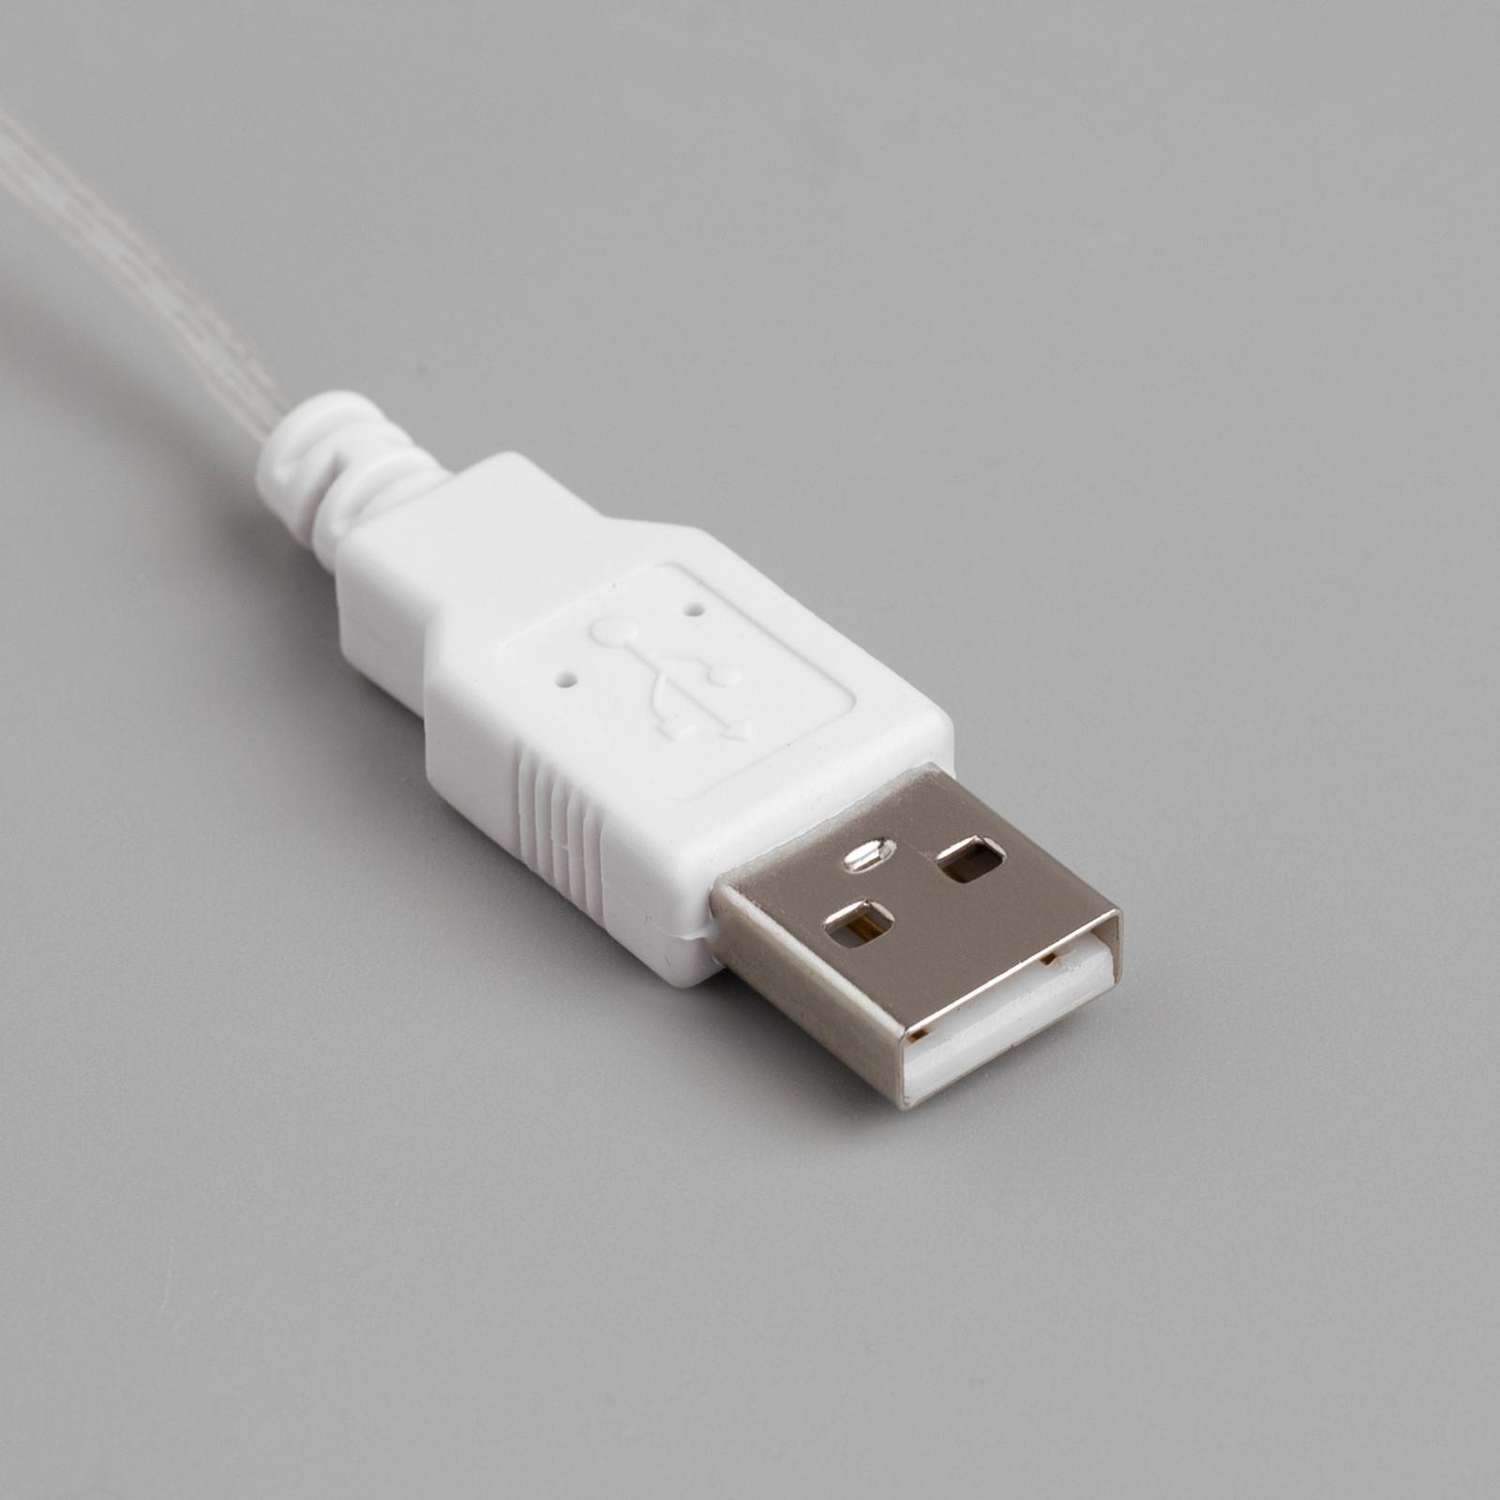 Гирлянда Luazon «Нить» 5 м роса IP20 серебристая нить 50 LED свечение белое USB - фото 3